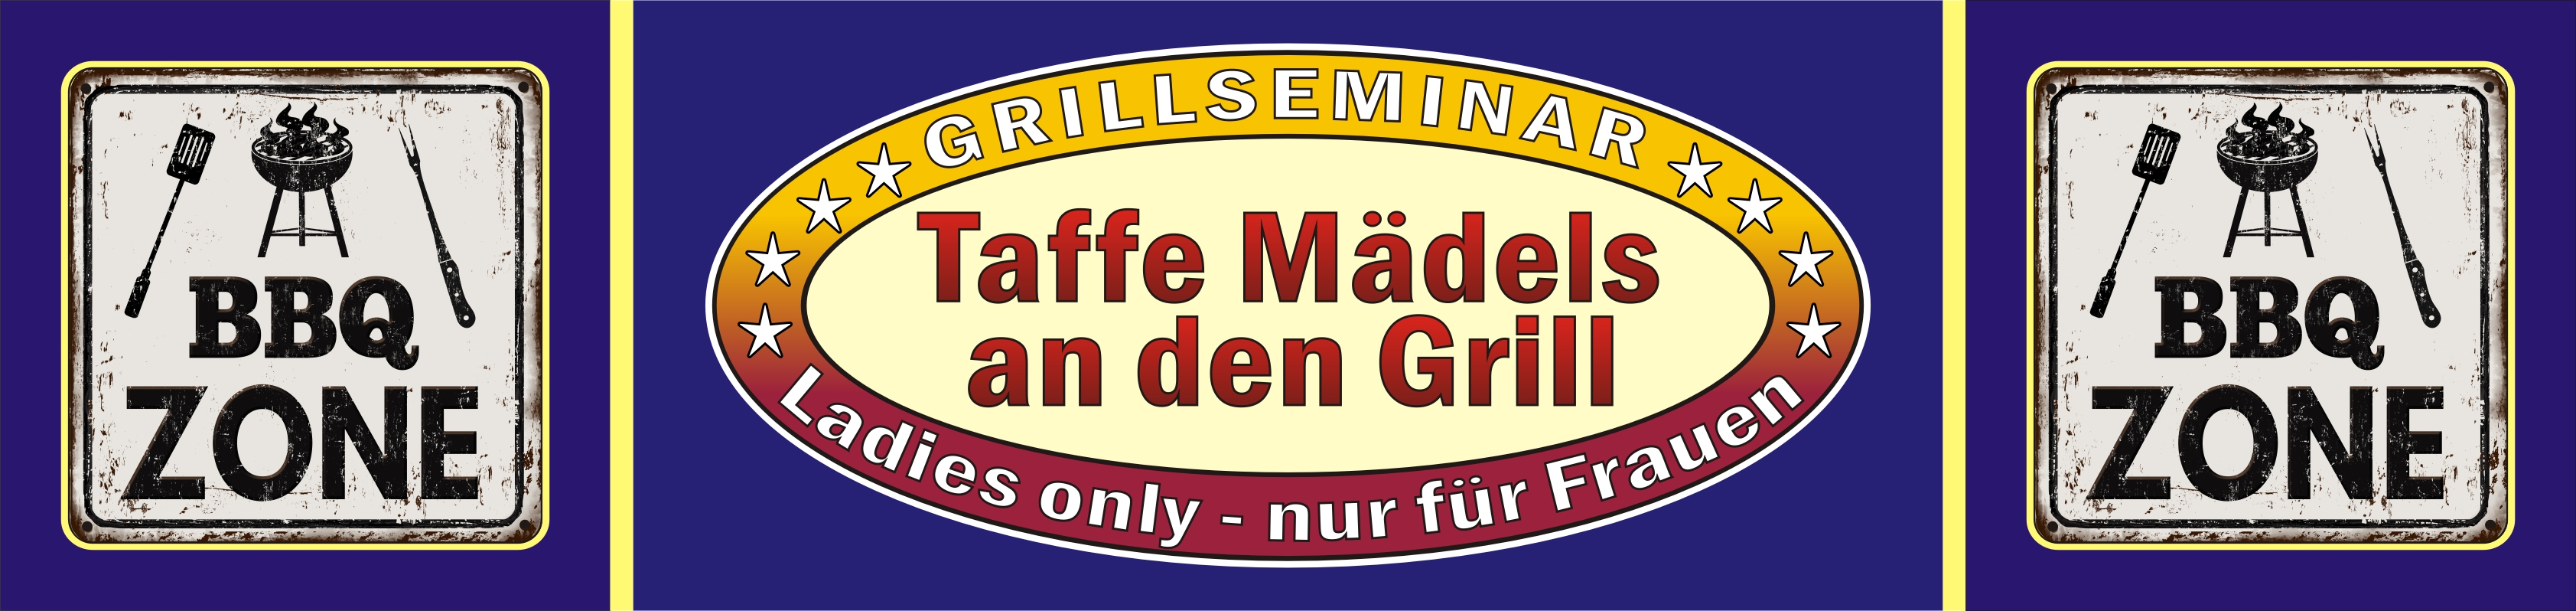 Der Grillkurs --- Taffe Mädels an den Grill / LADIES ONLY / Frauengrillkurs --- für Teilnehmerinnen aus Herford, Hiddenhausen, Bad Salzuflen, Bielefeld, Paderborn,Gütersloh,...